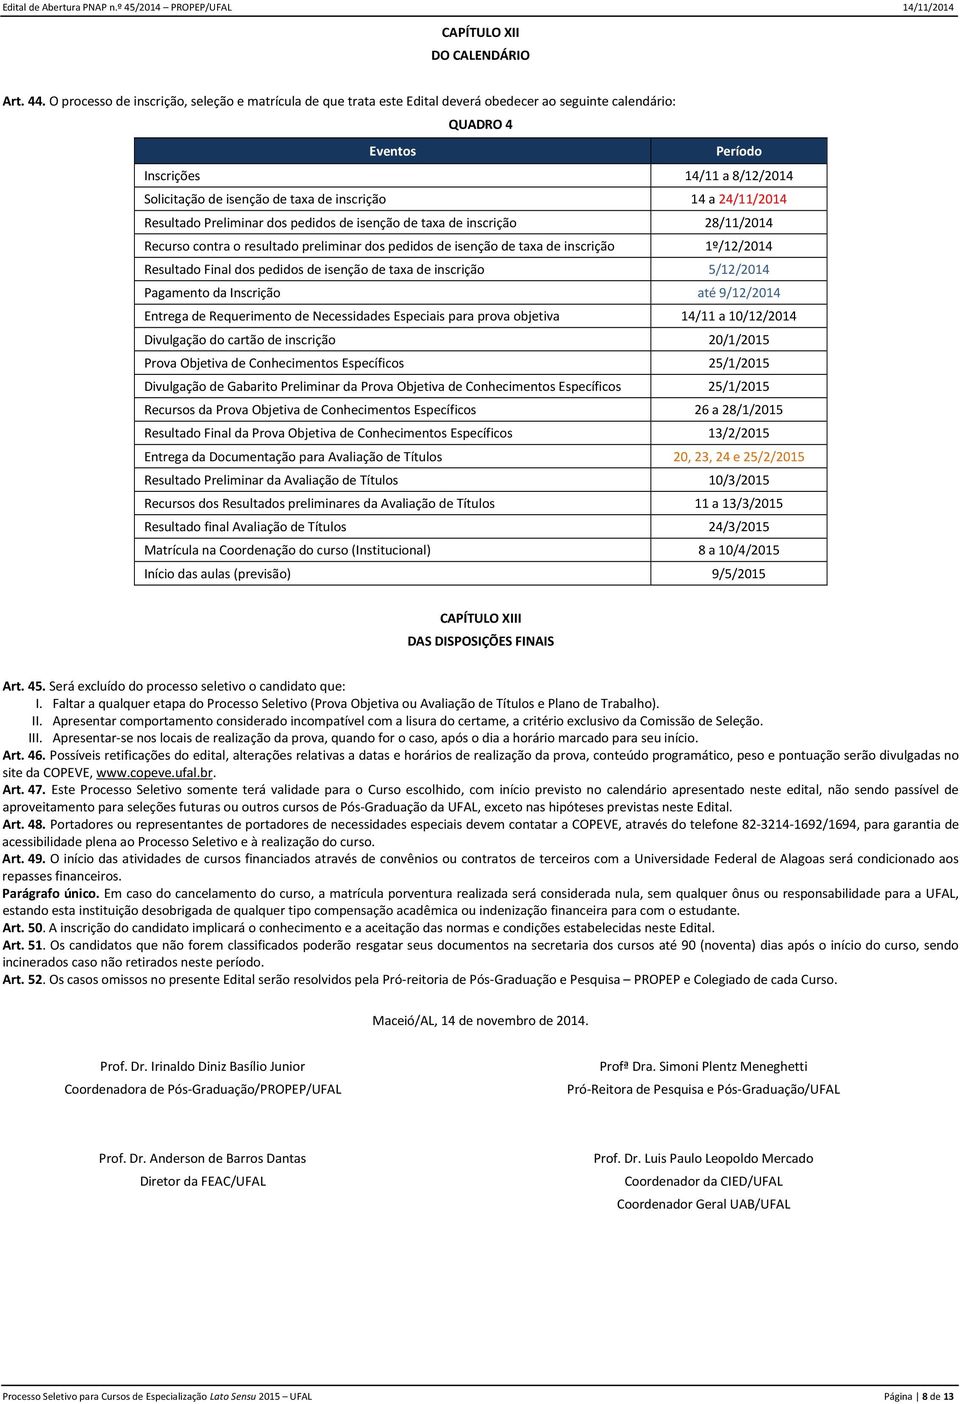 inscrição 14 a 24/11/2014 Resultado Preliminar dos pedidos de isenção de taxa de inscrição 28/11/2014 Recurso contra o resultado preliminar dos pedidos de isenção de taxa de inscrição 1º/12/2014